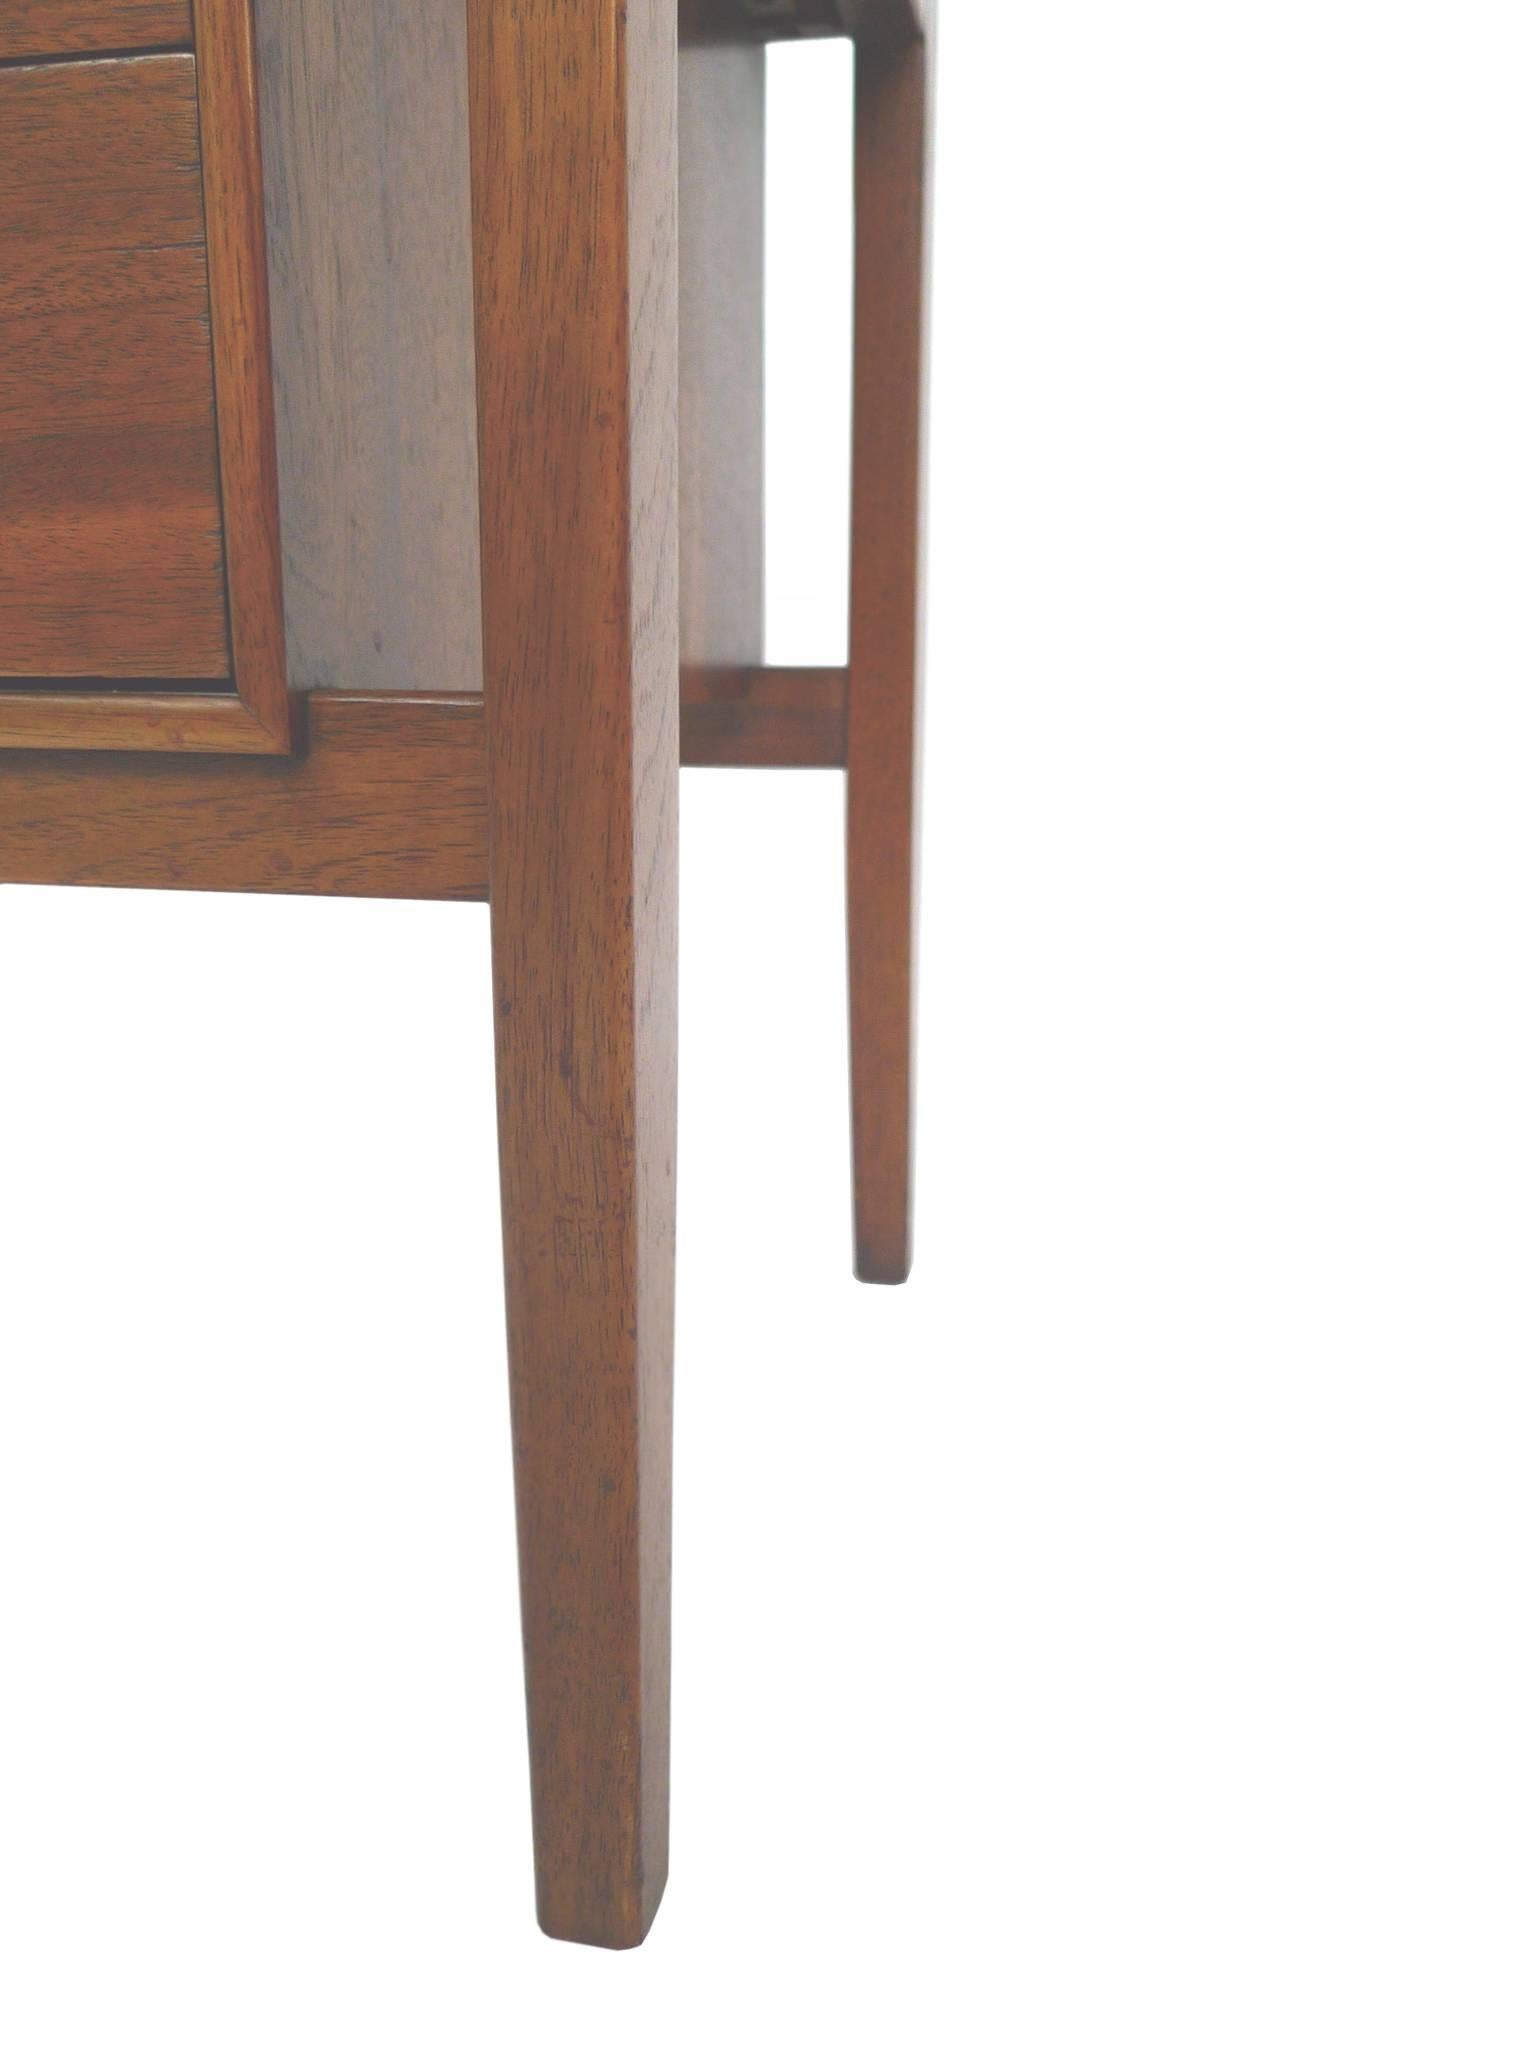 Midcentury Modern Walnut Side Tables by Drexel 3